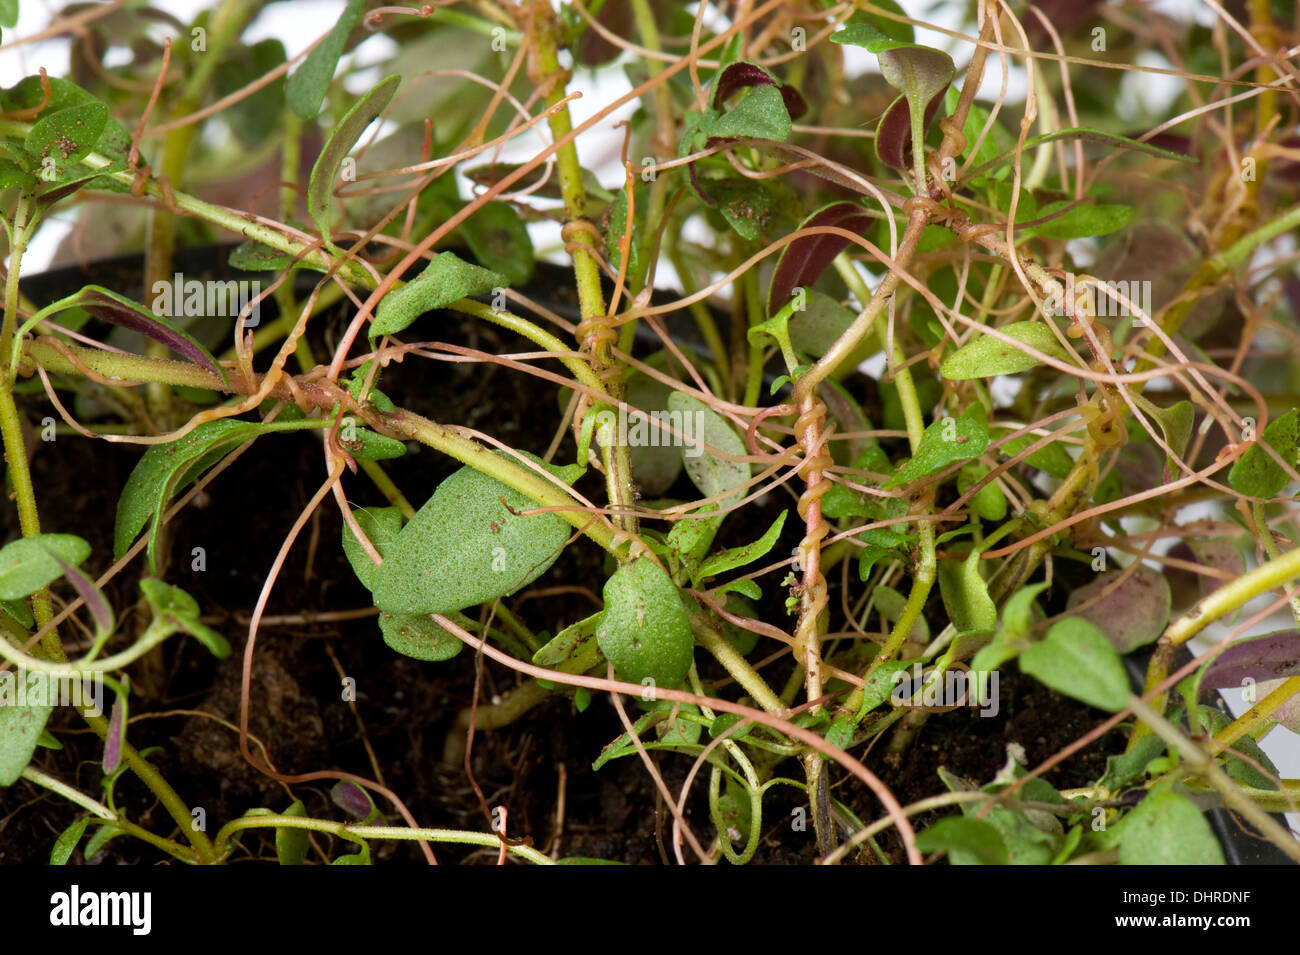 Unión dodder, Cuscuta europaea, una planta parásita en una manada tomillo planta en una maceta Foto de stock